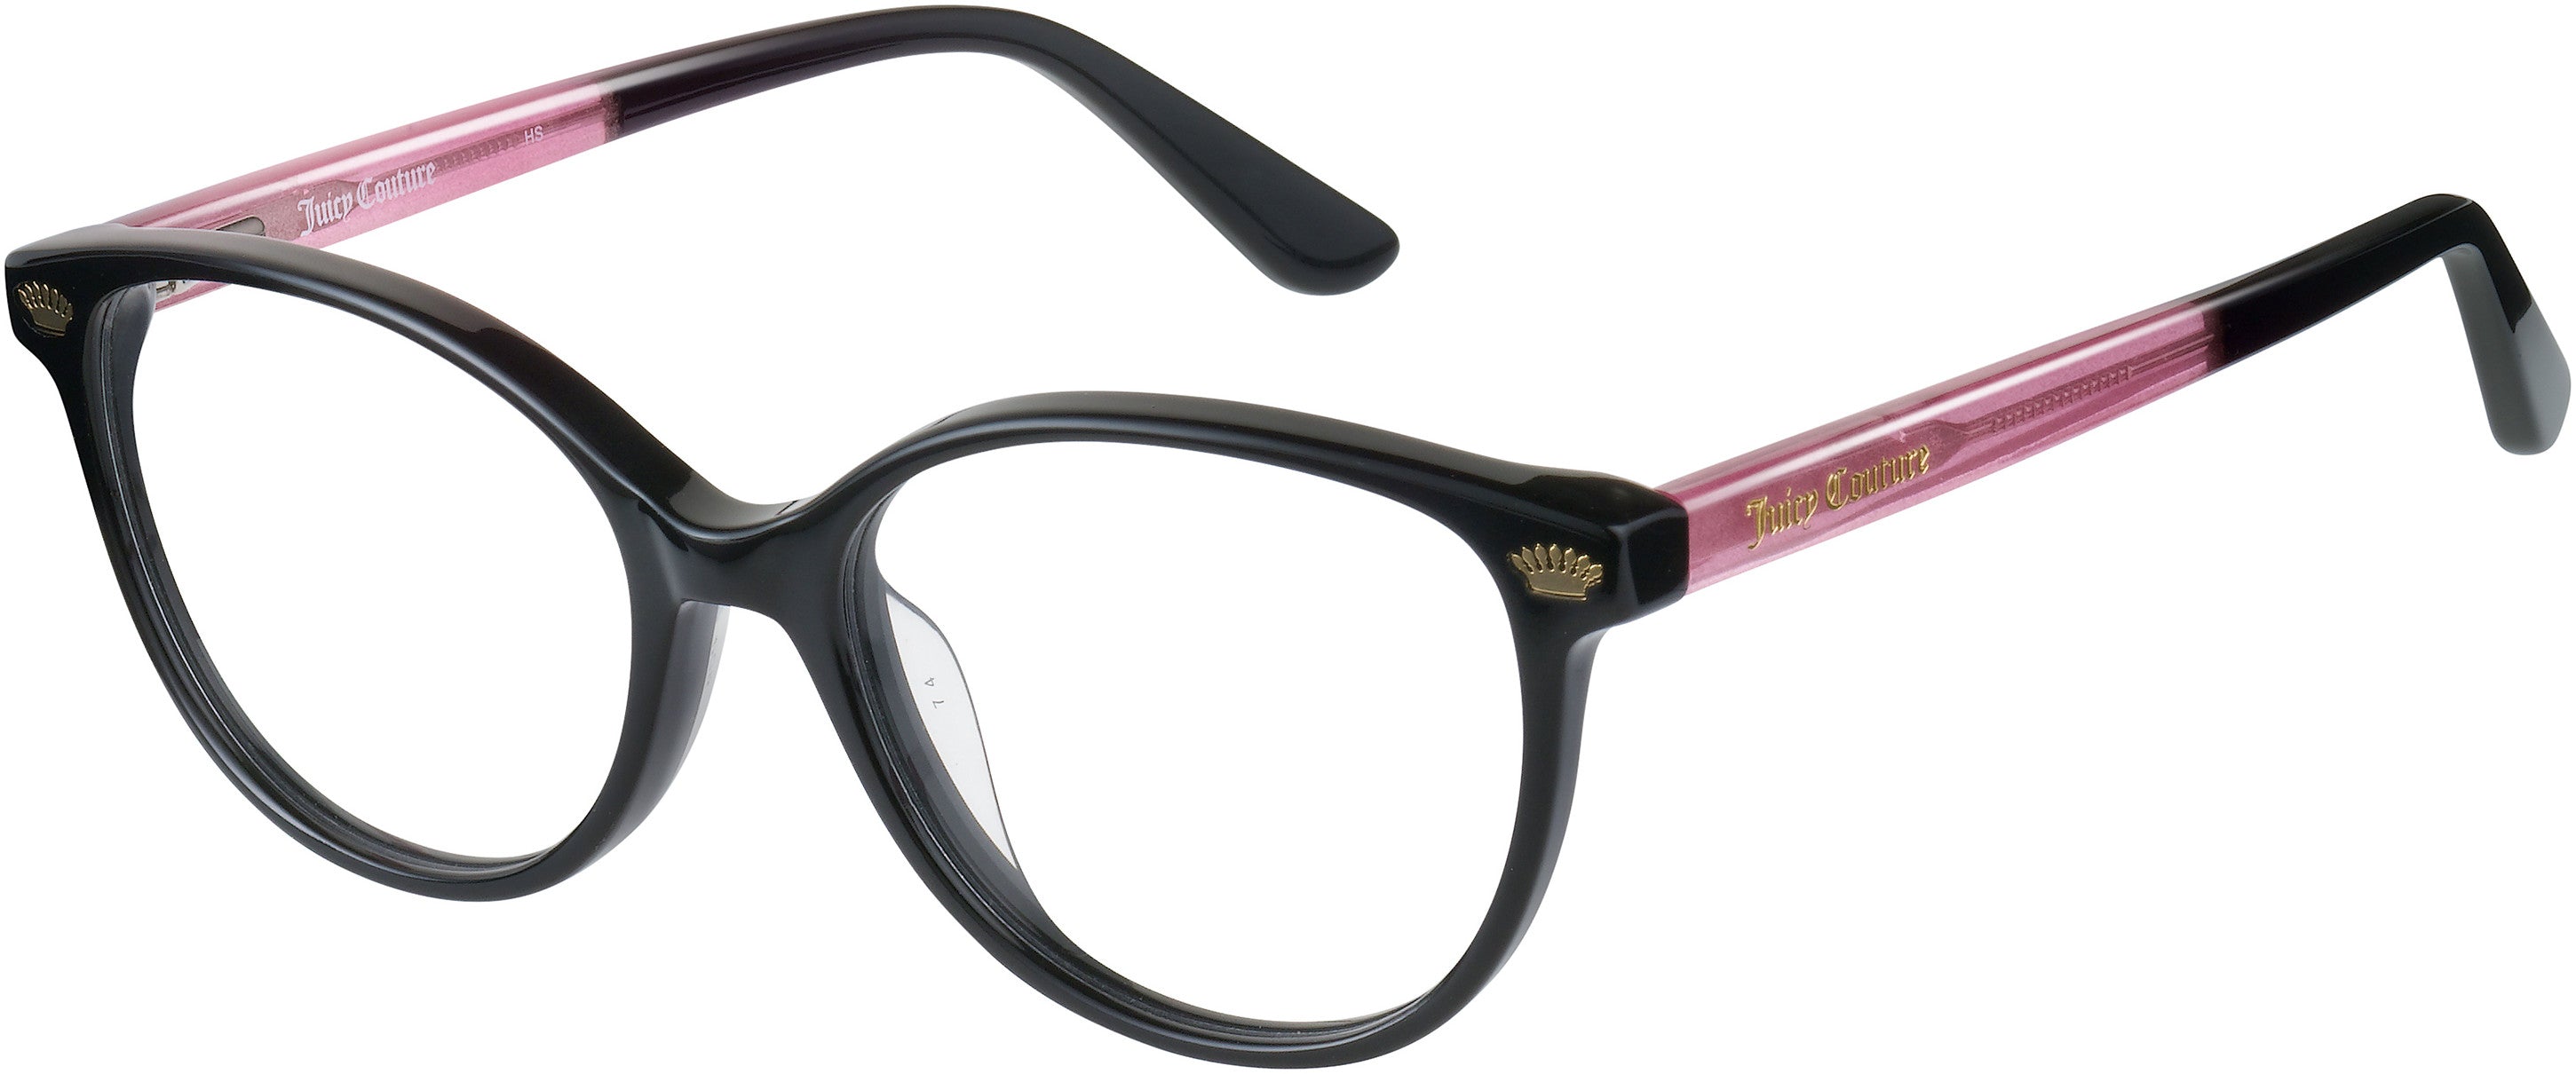 Juicy Couture Juicy 932 Cat Eye/butterfly Eyeglasses 03H2-03H2  Black Pink (00 Demo Lens)